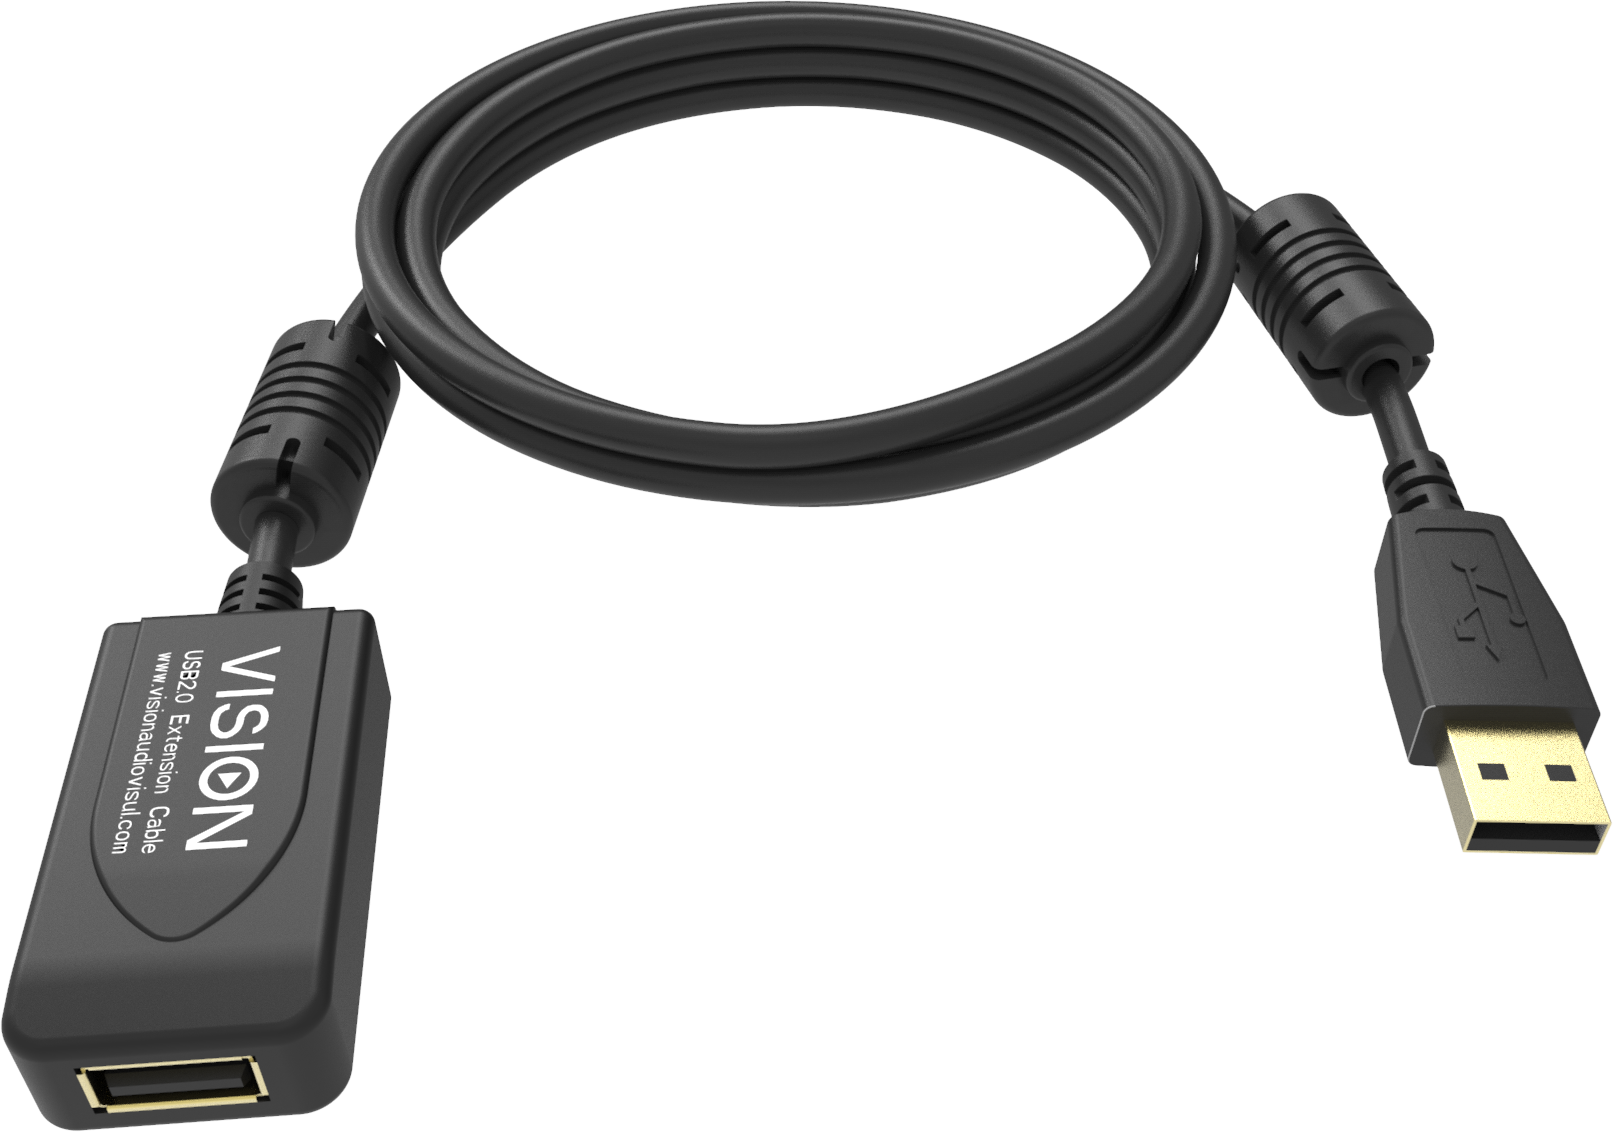 An image showing Câble de rallonge USB 2.0 professionnel Noir 5 m (16 pi) avec booster actif